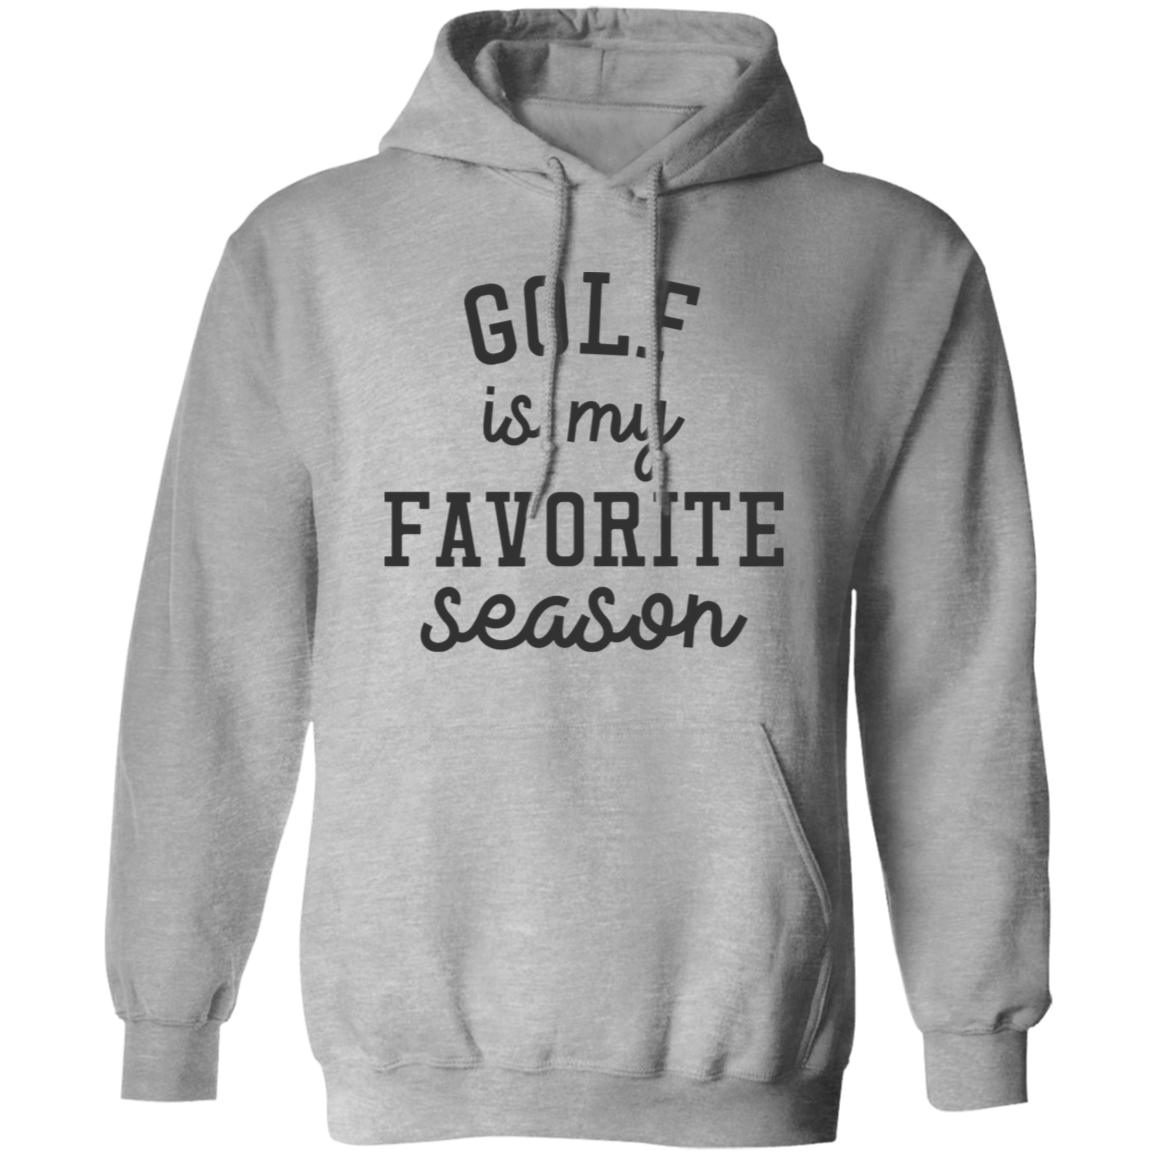 Golf My Favorite Season G185 Pullover Hoodie